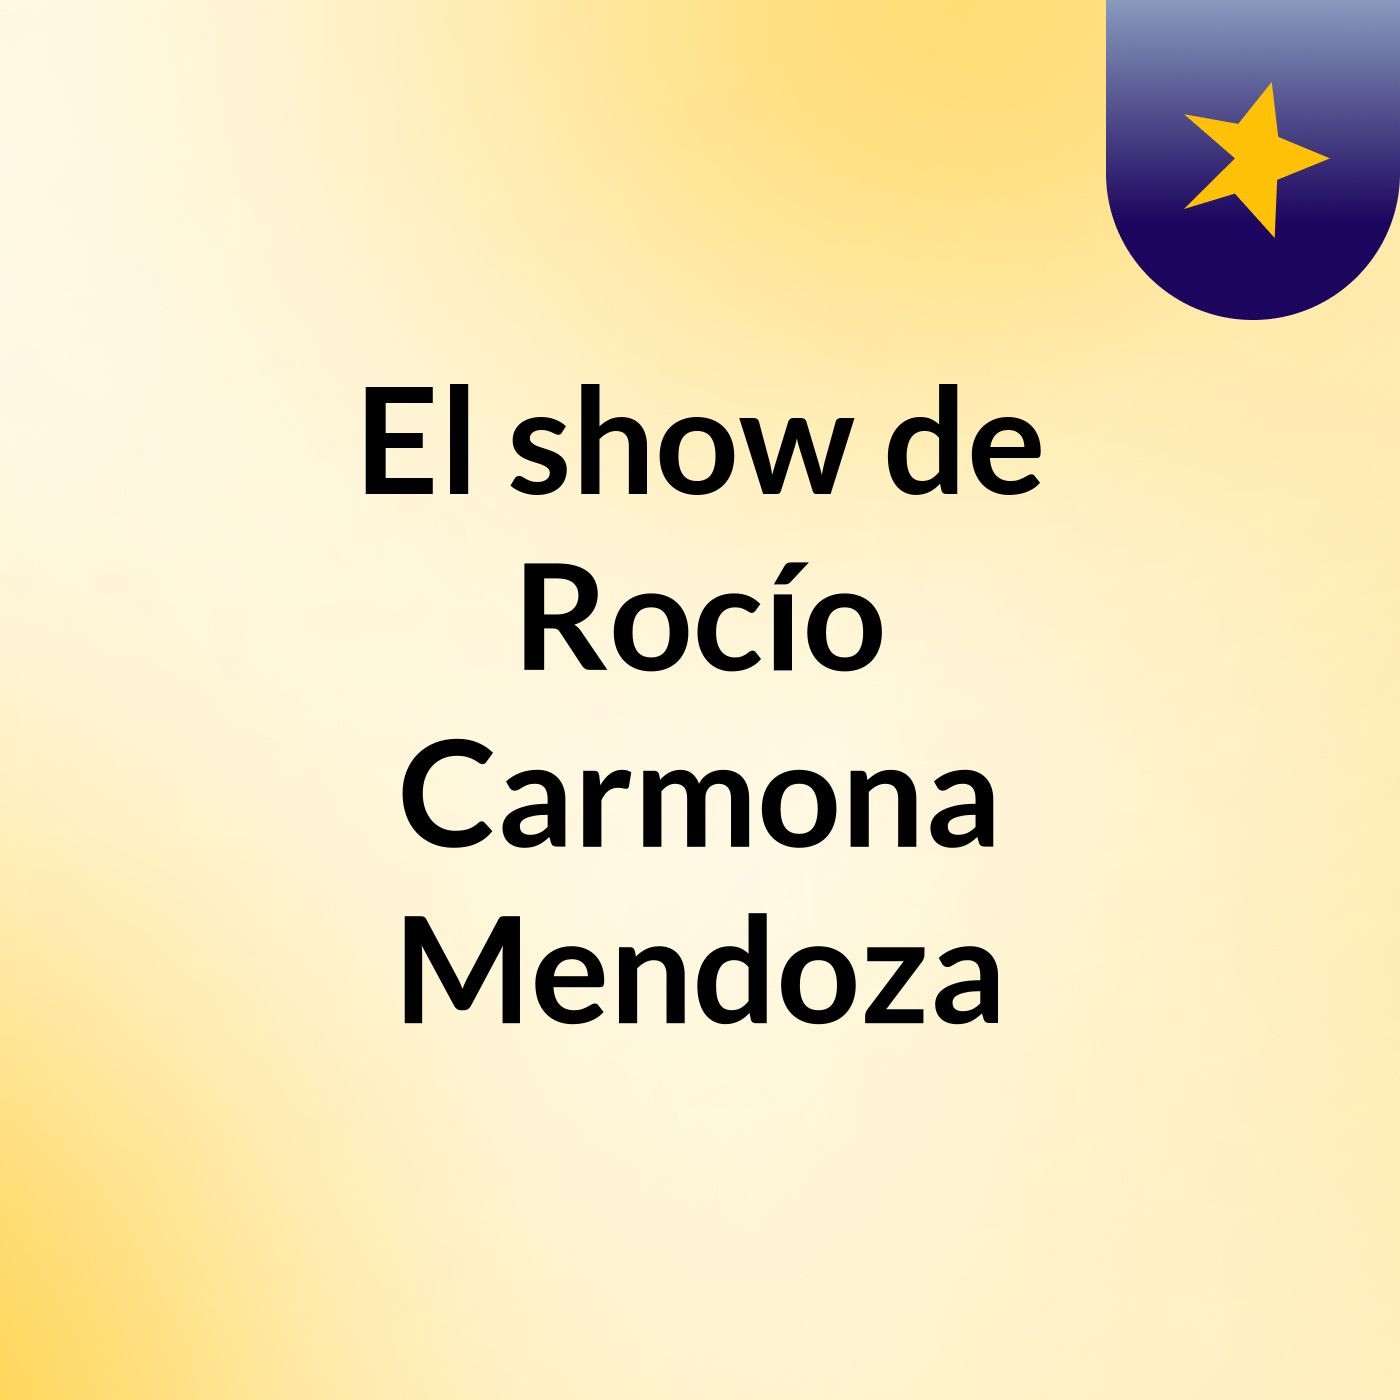 El show de Rocío Carmona Mendoza